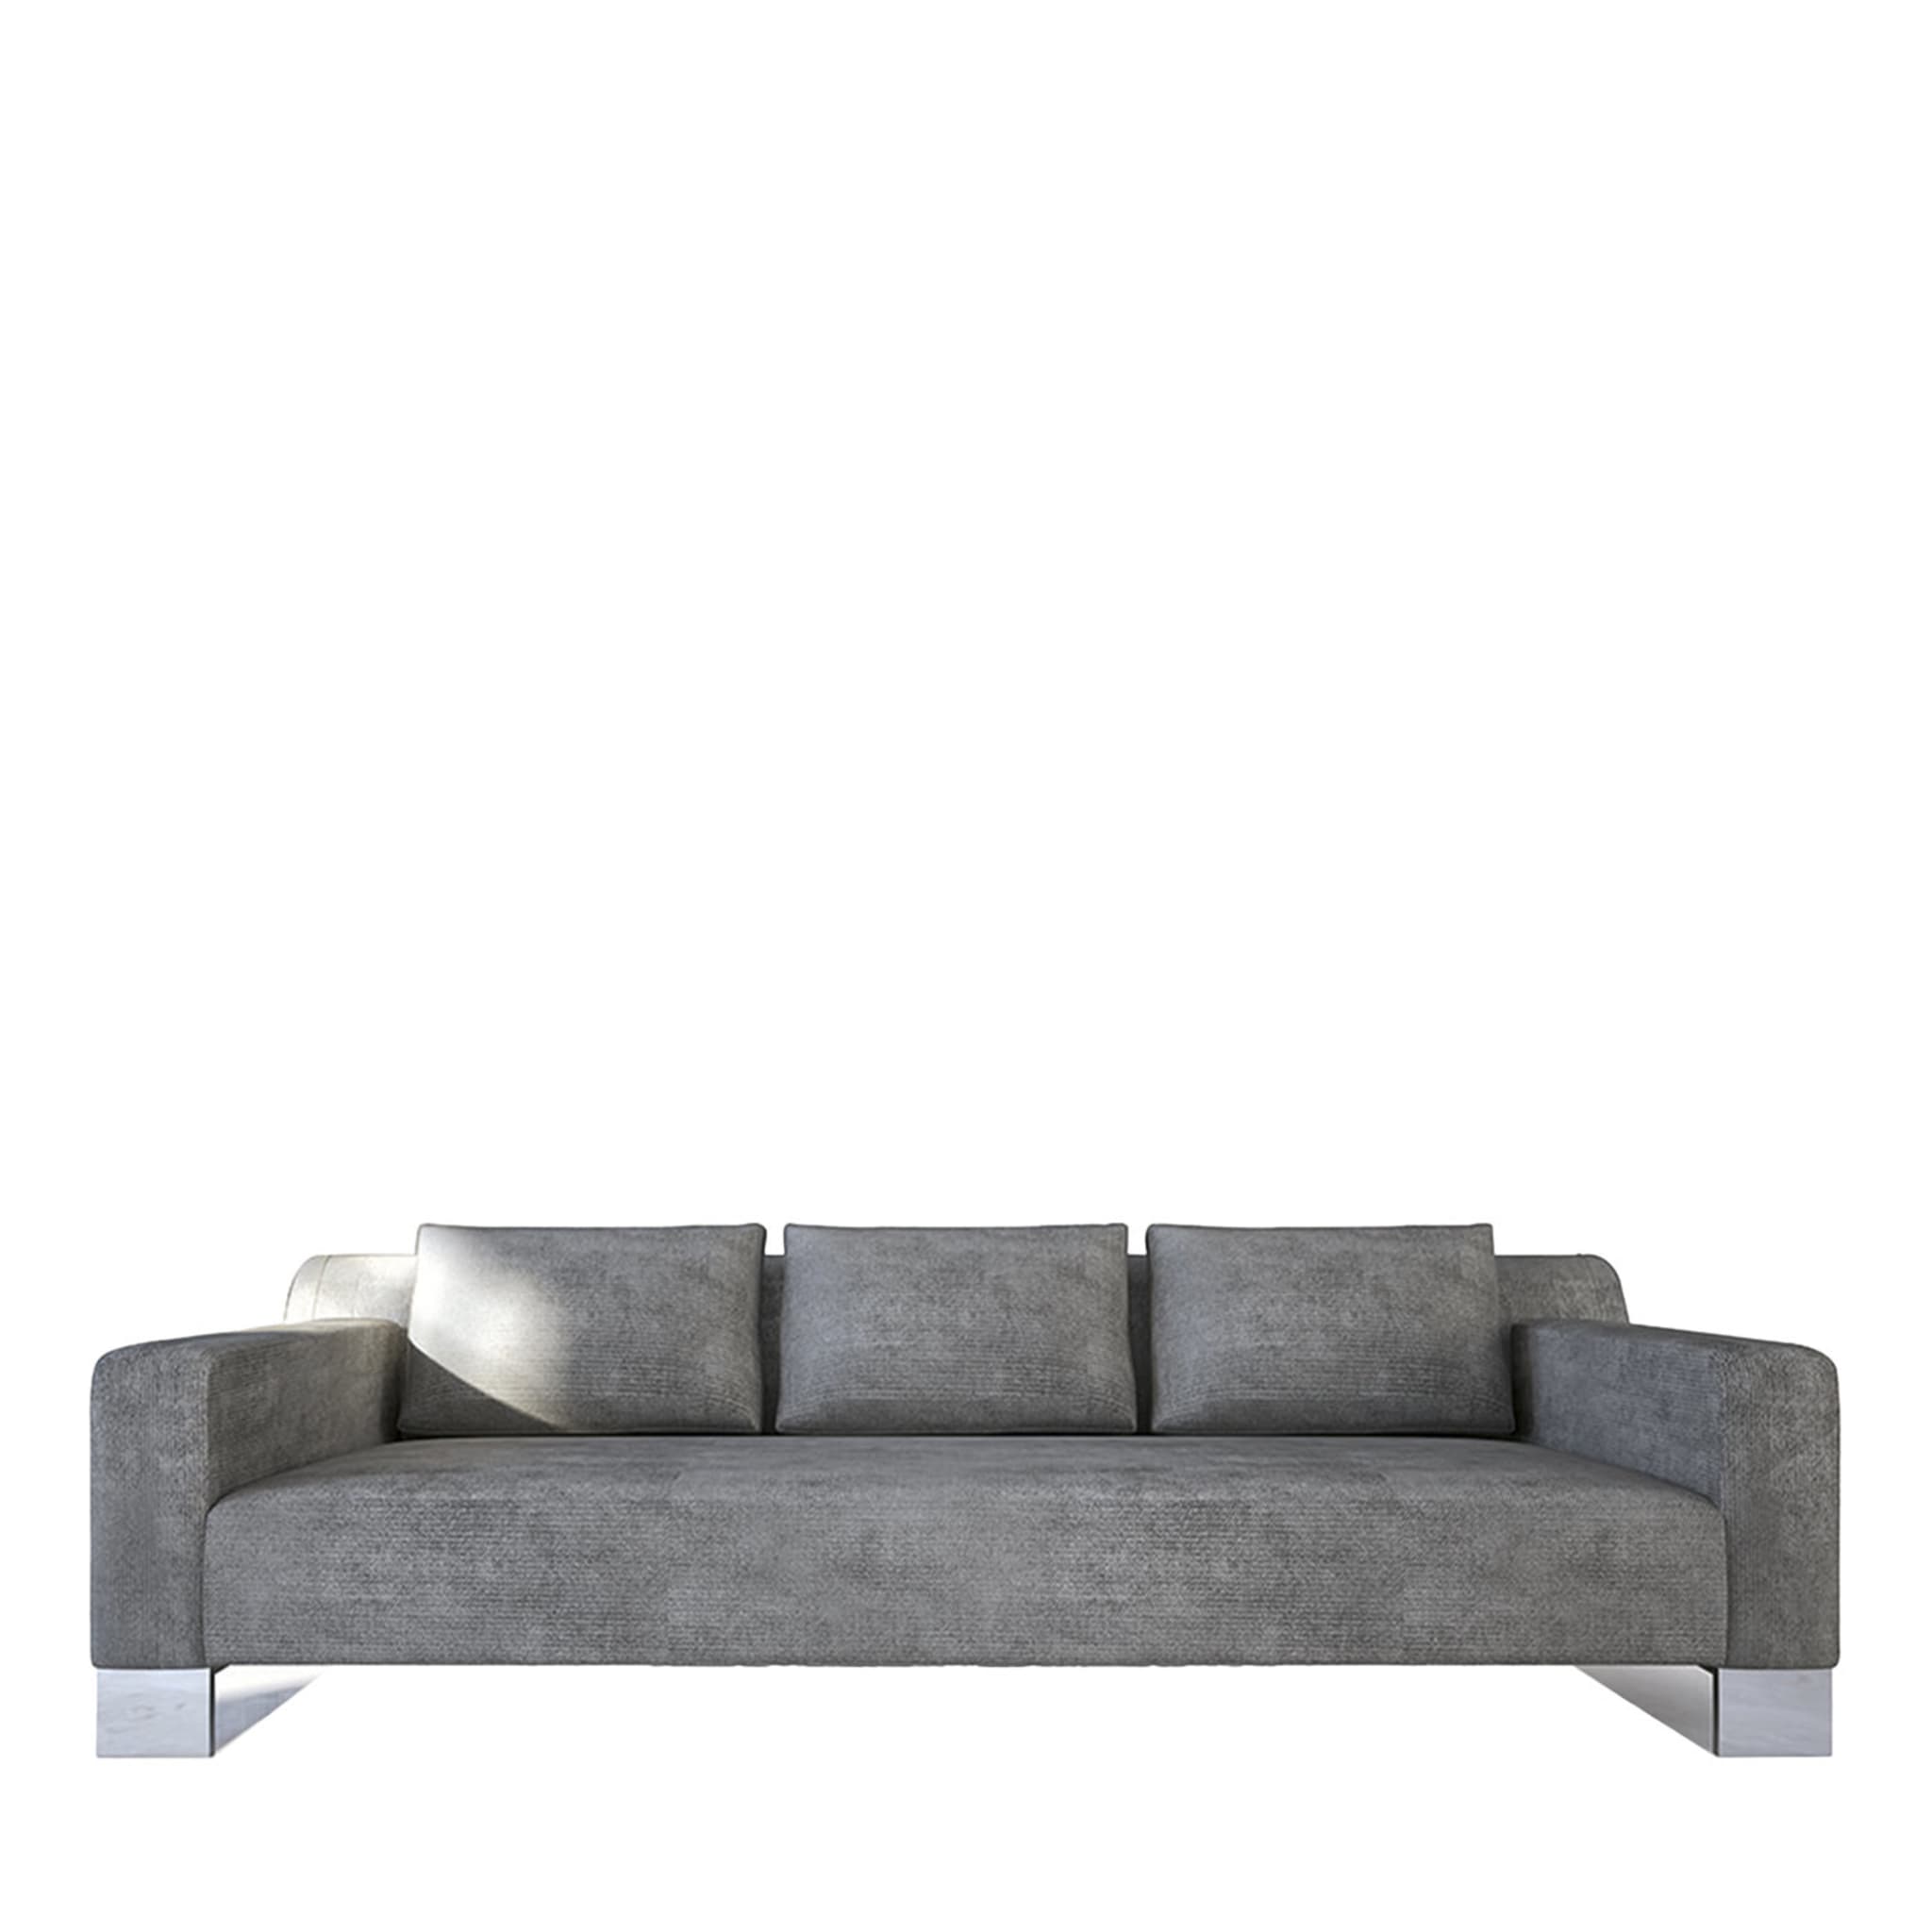  Pollock graues sofa von Giannella Ventura - Hauptansicht